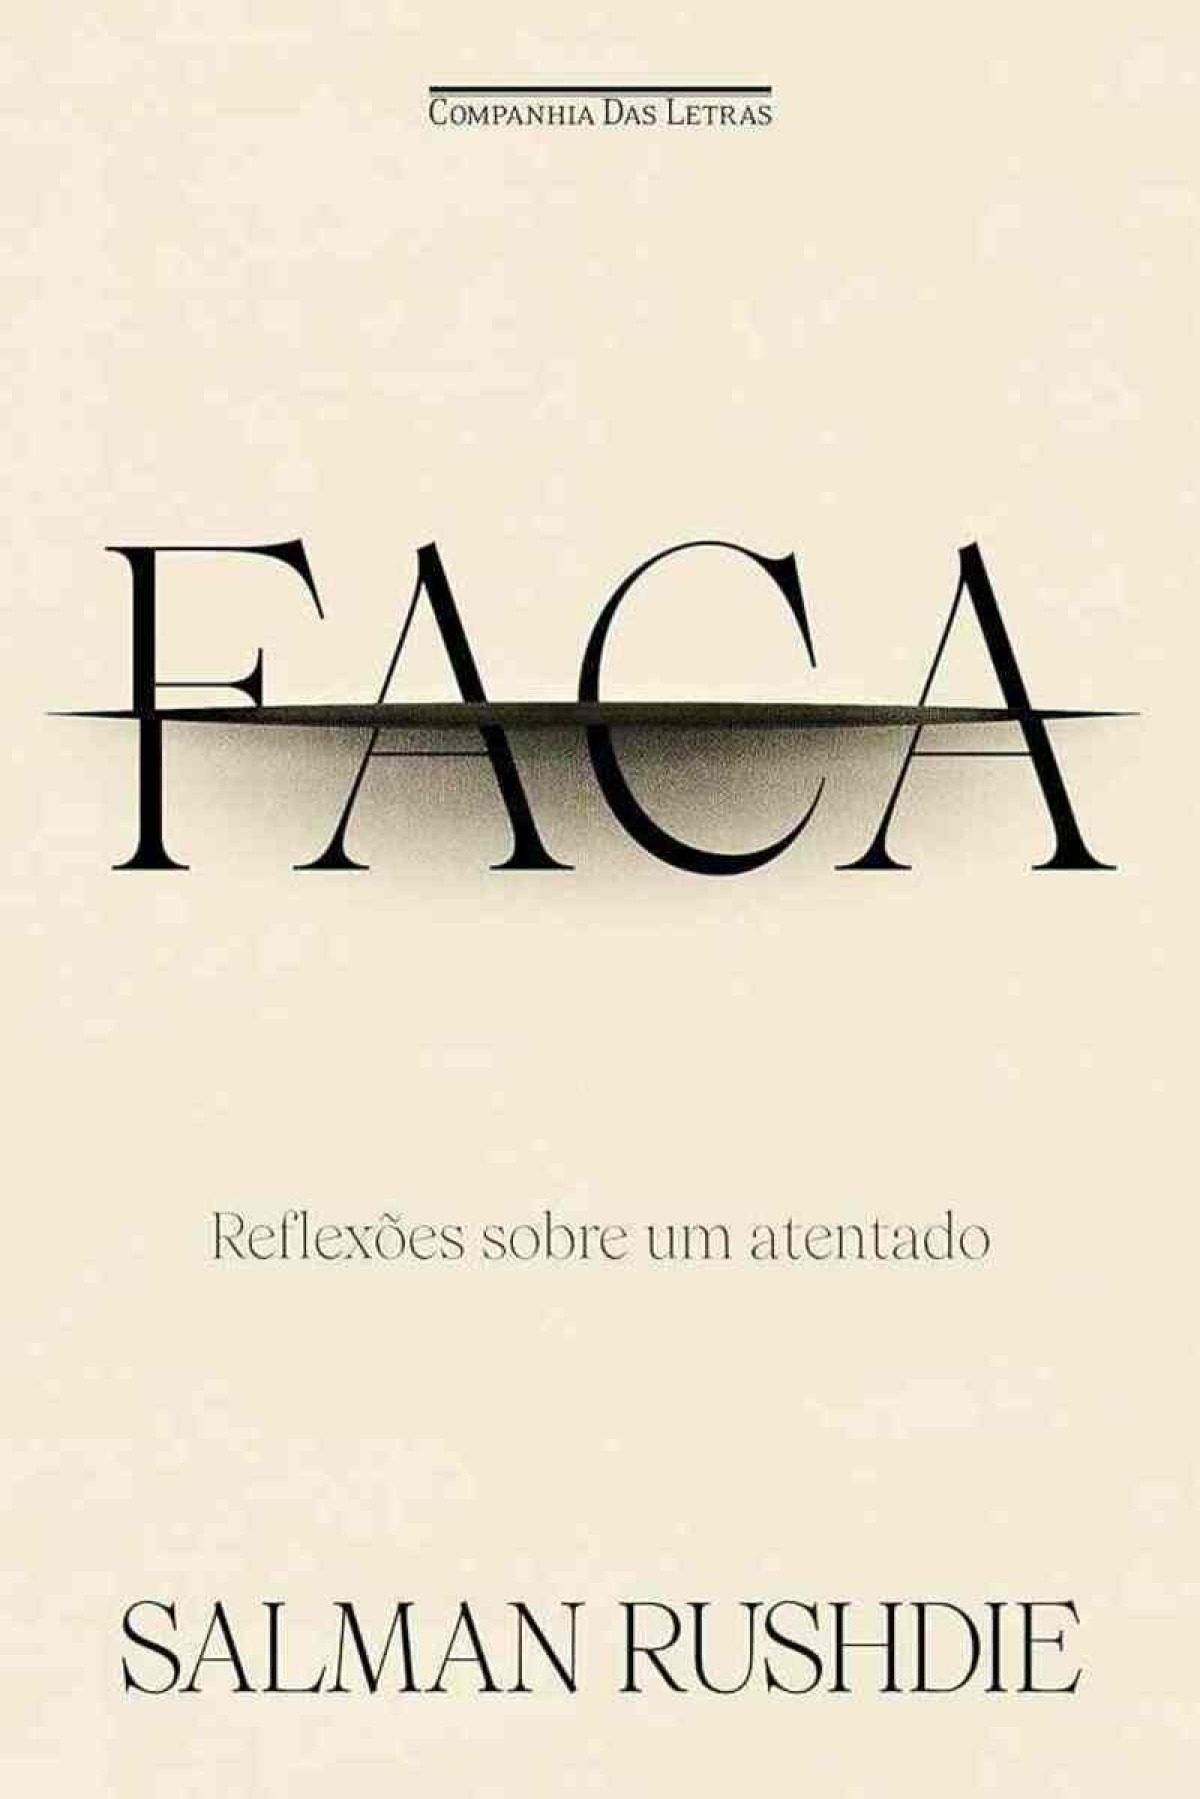 capa do livro "FACA: REFLEXÕES SOBRE UM ATENTADO"